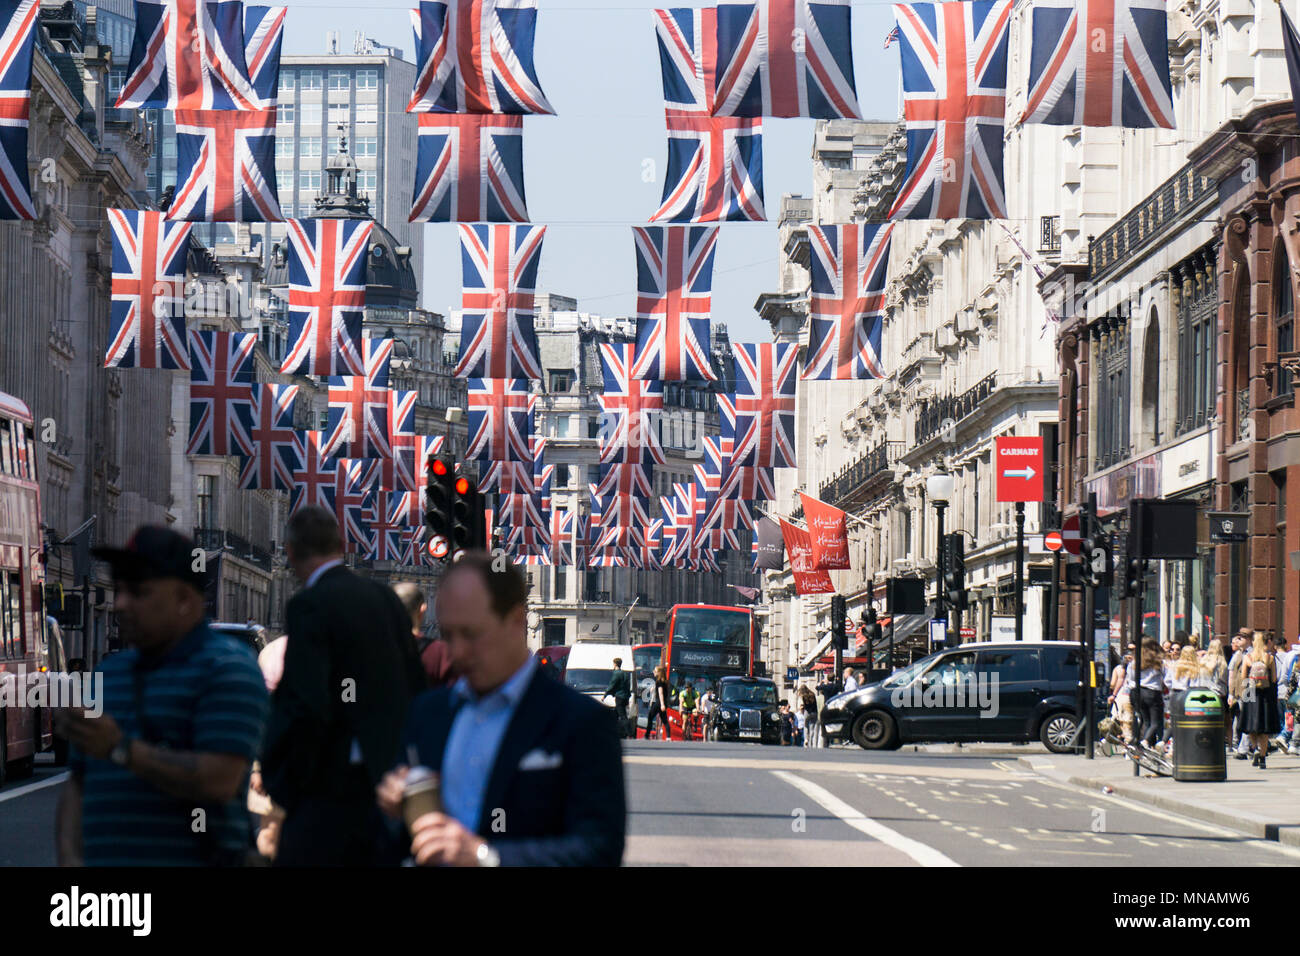 Union Jack drapeaux pendent dans Regent Street, le centre de Londres, dans la préparation de la mariage du prince Harry et Meghan Markle Goutte d'encre : Crédit/Alamy Live News Banque D'Images